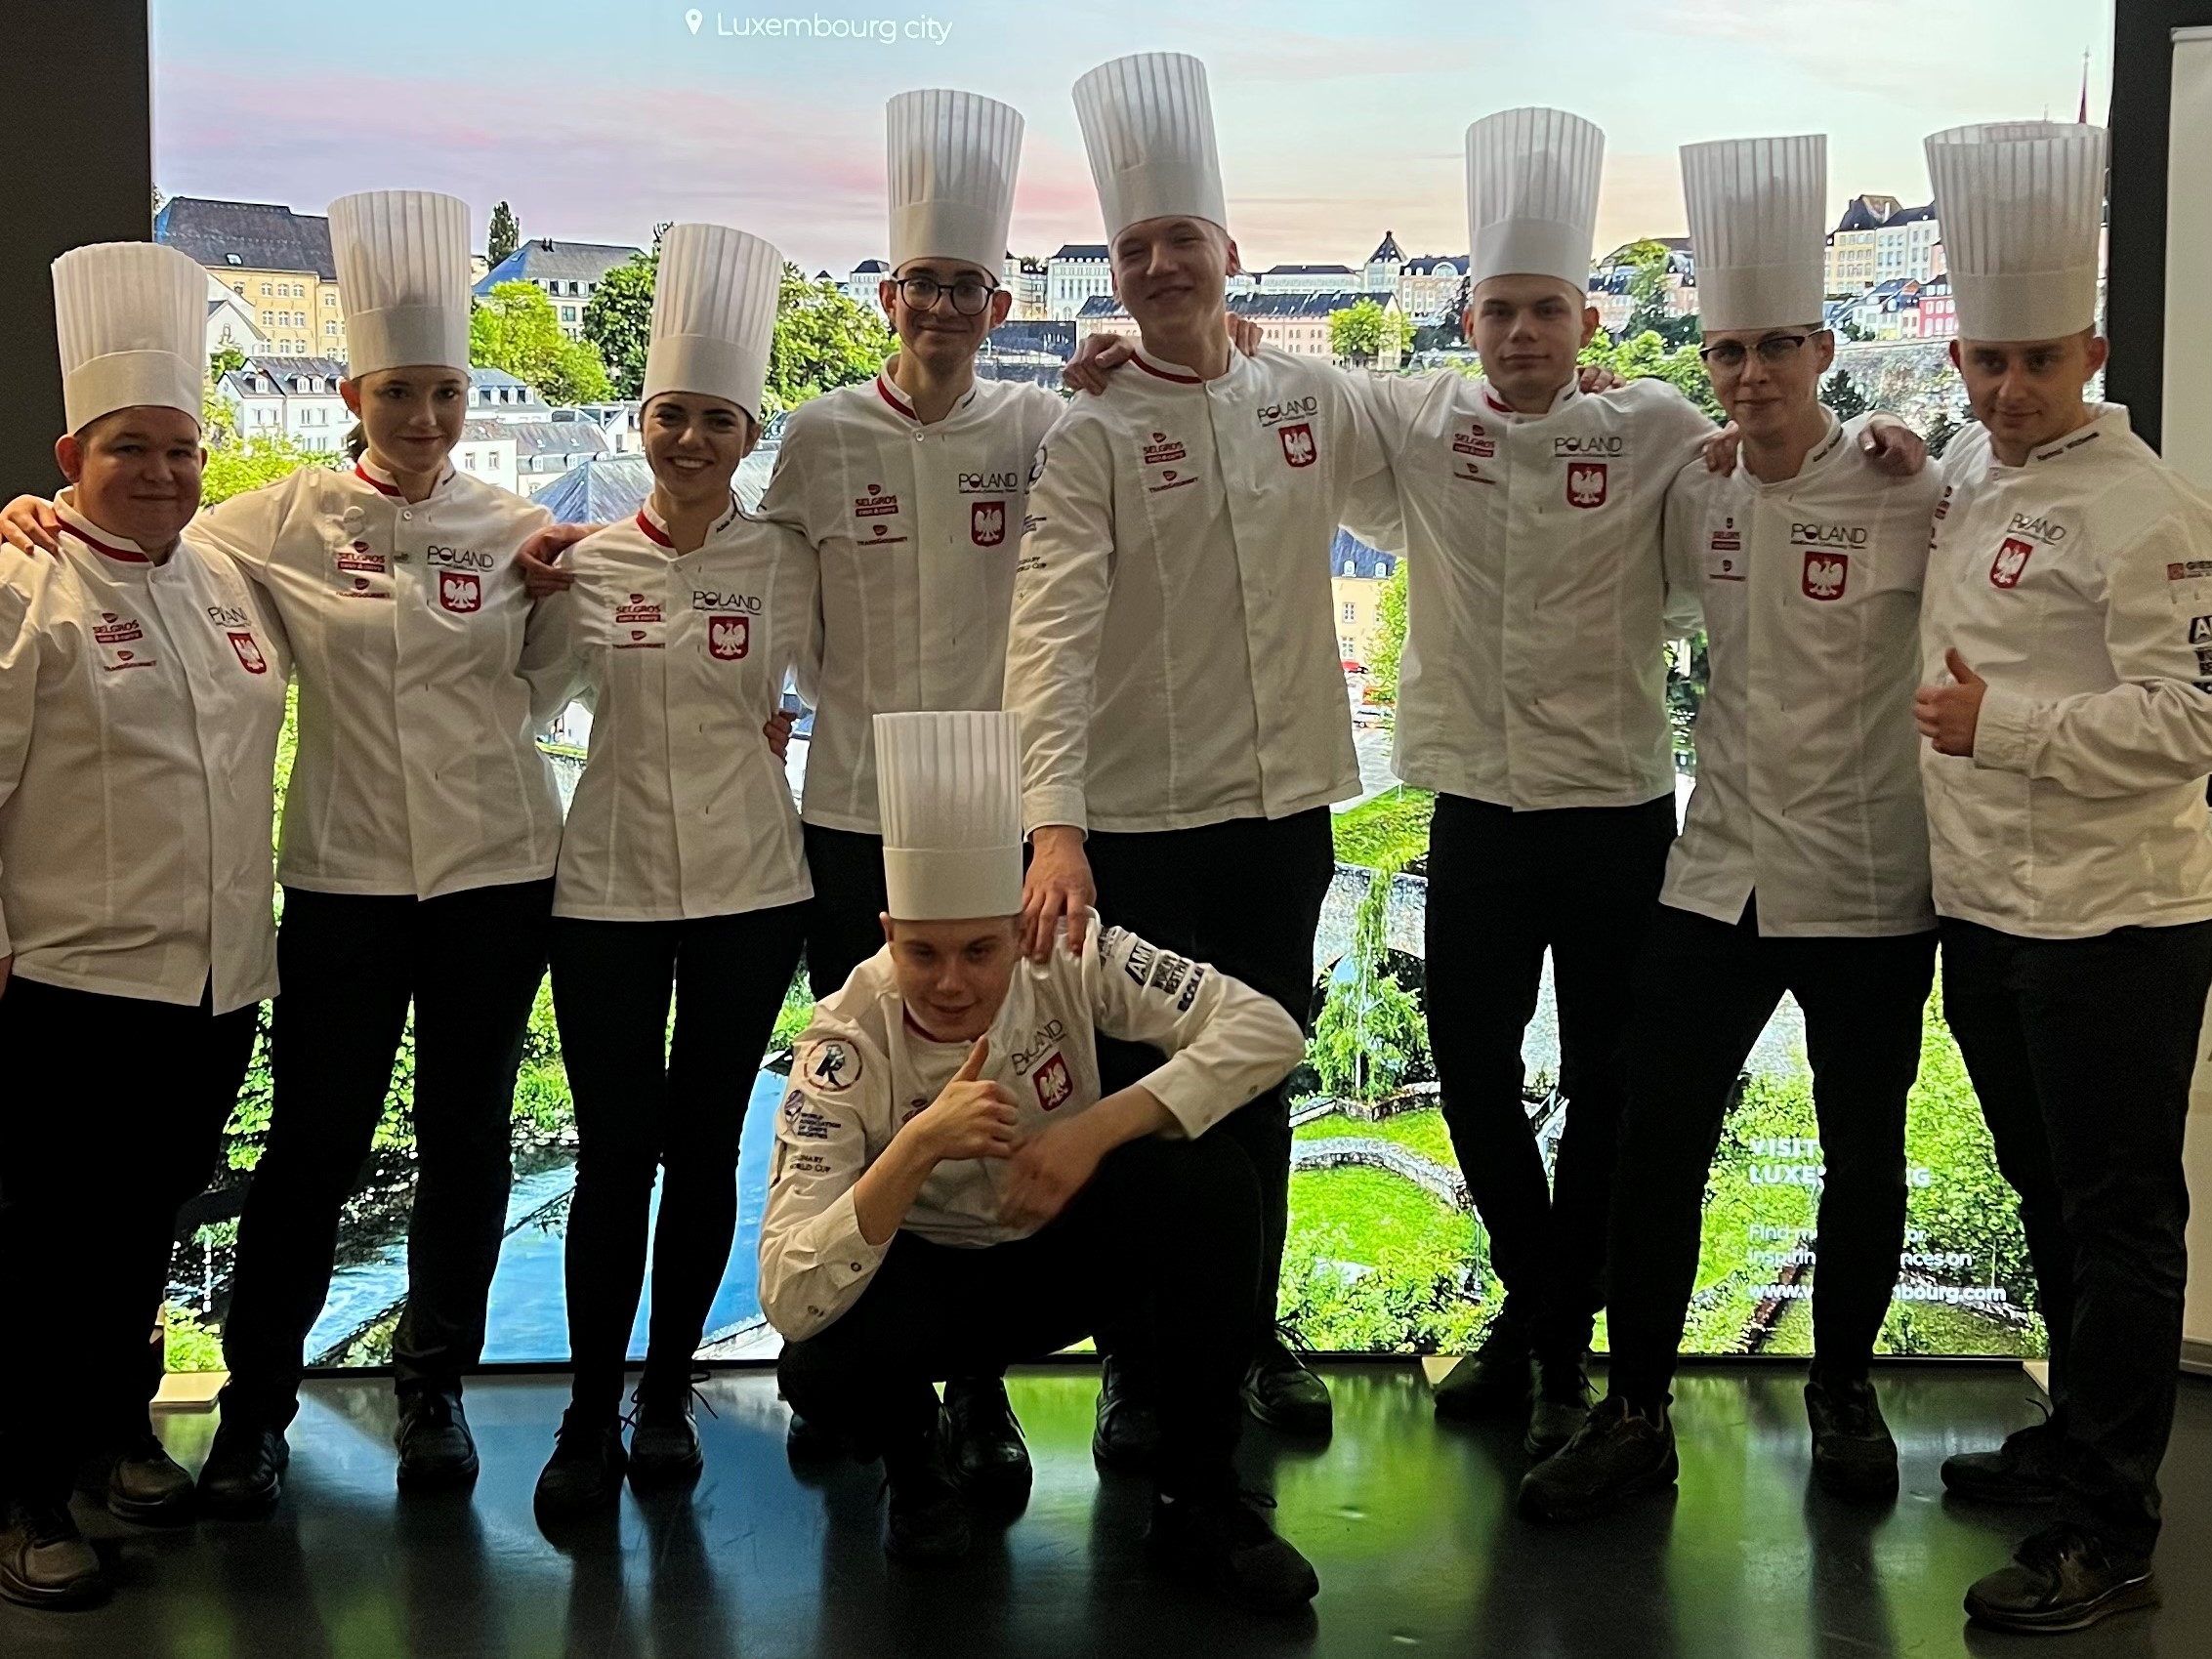 Polacy z podwójnym srebrem podczas Kulinarnego Pucharu Świata w Luksemburgu